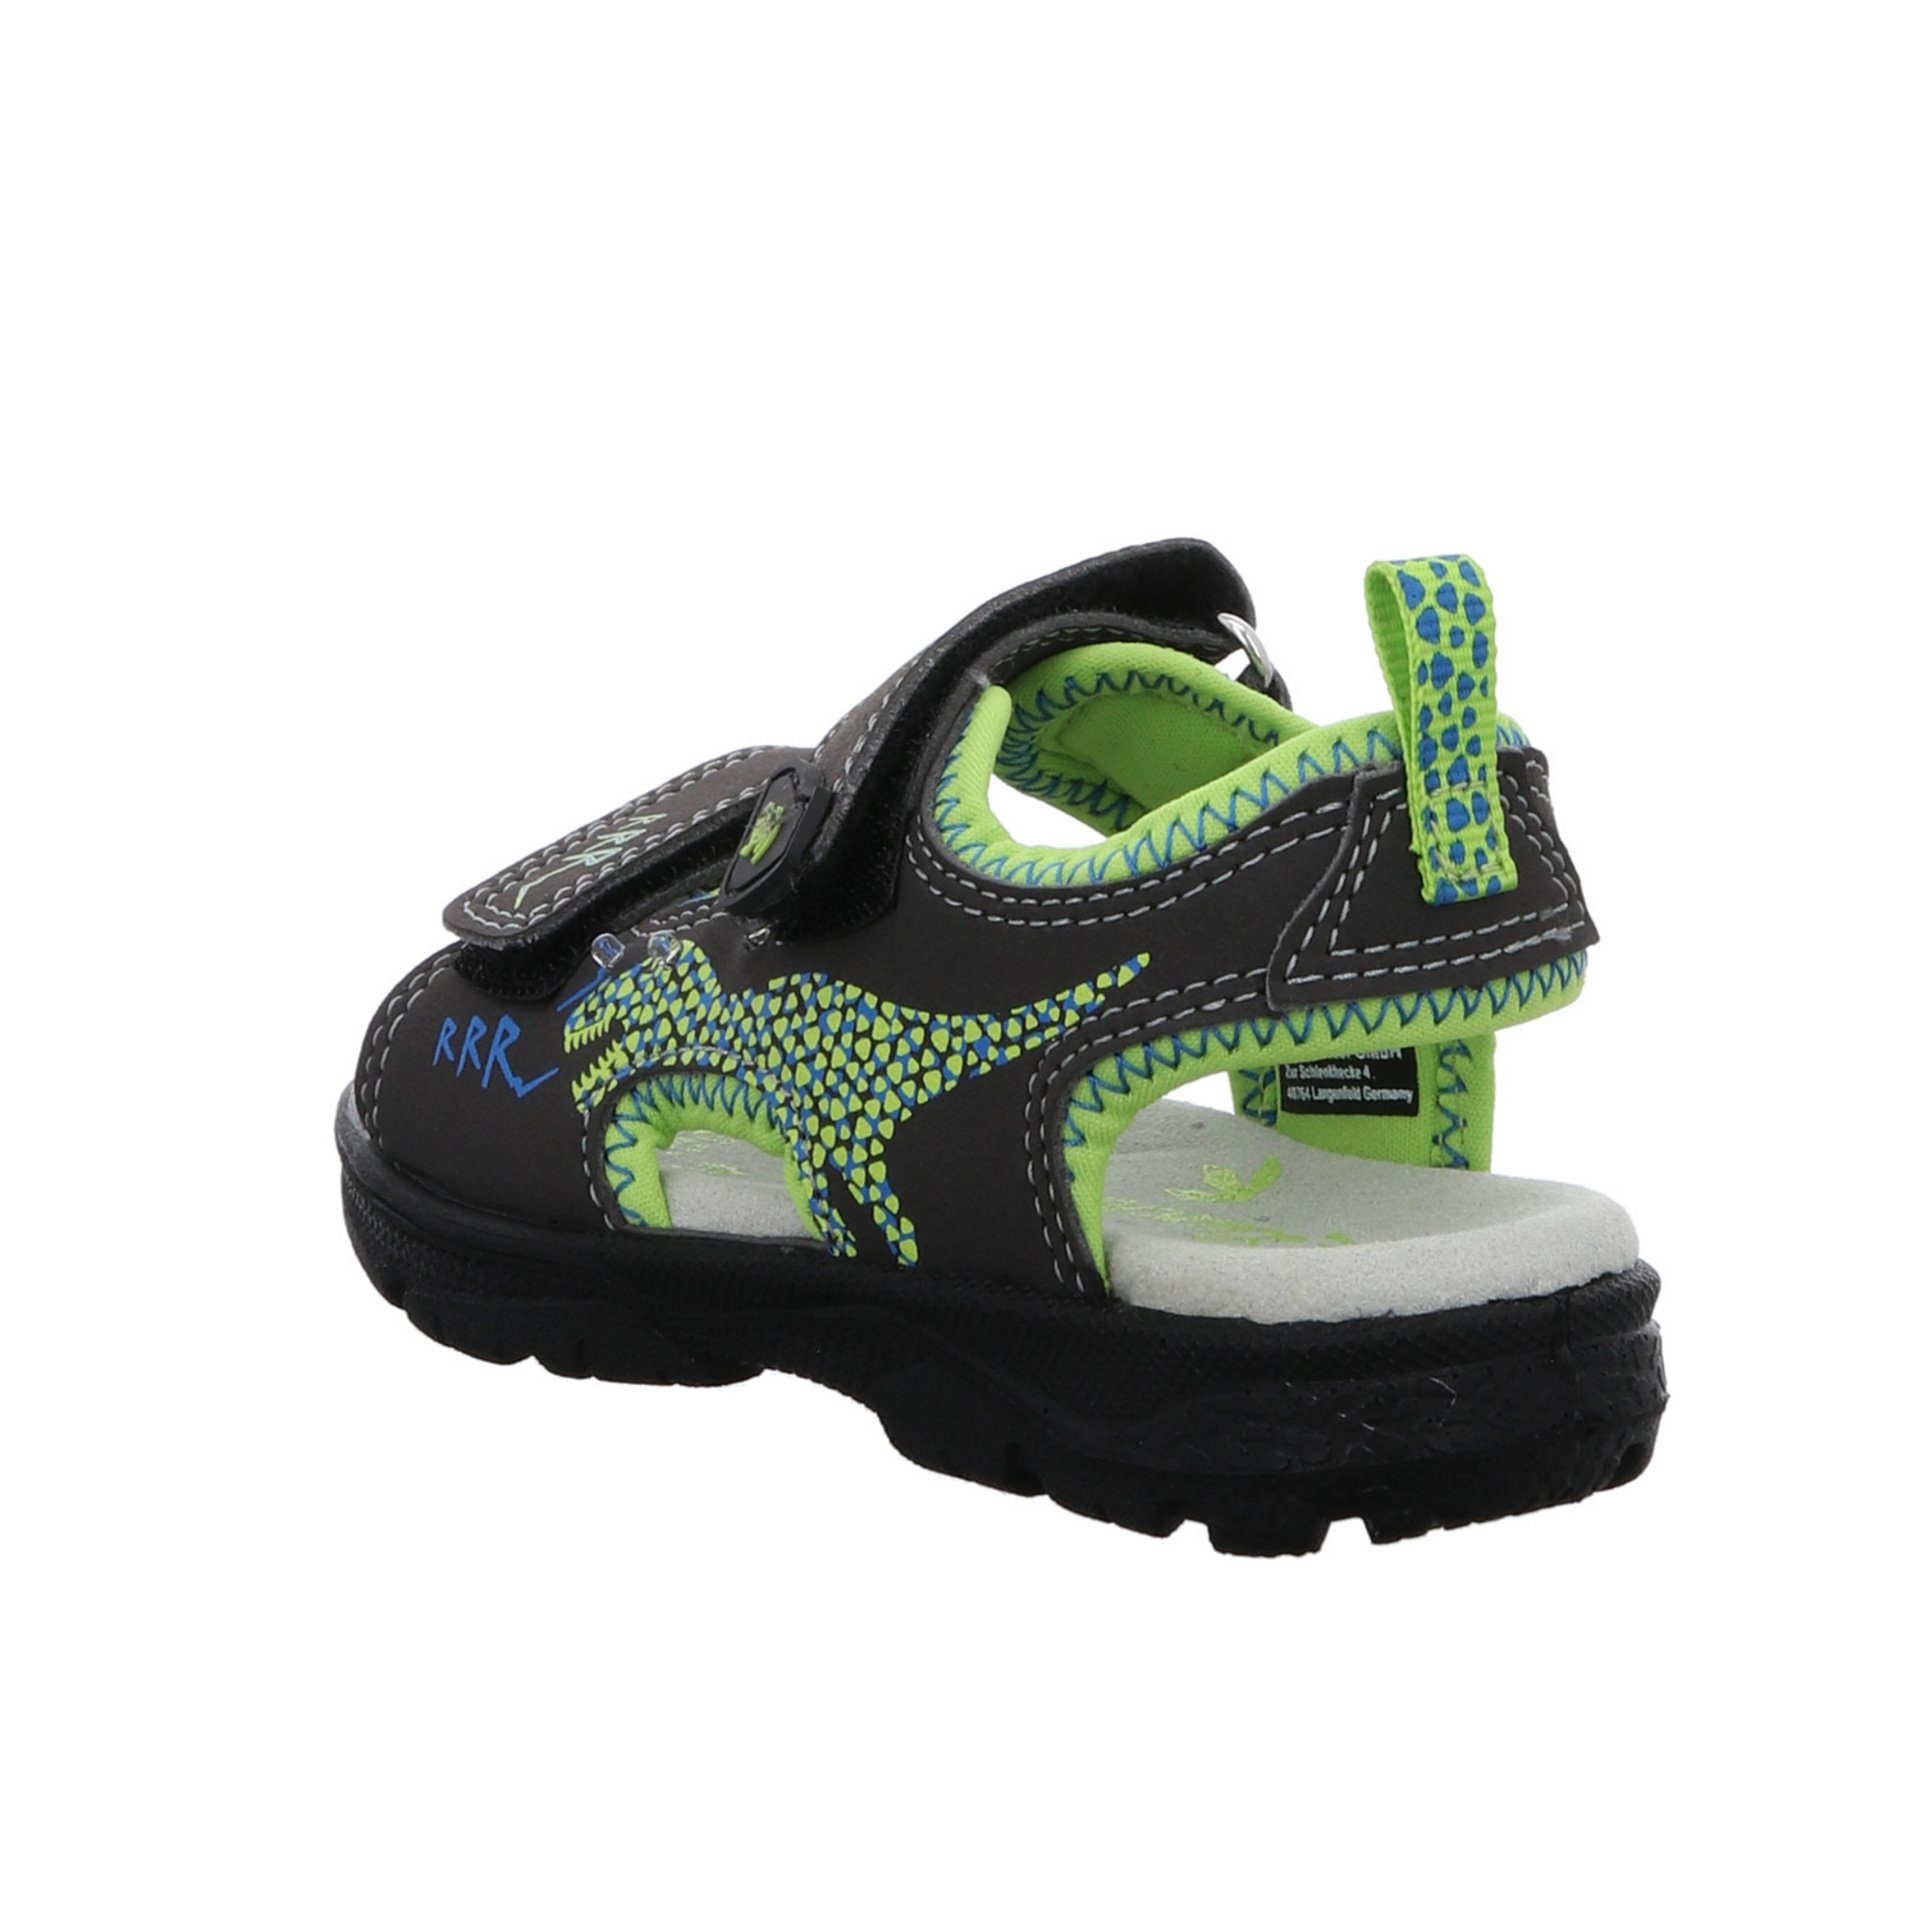 Jungen Sandale Sandale Kinderschuhe Schuhe Kelto Synthetikkombination Lurchi Sandalen